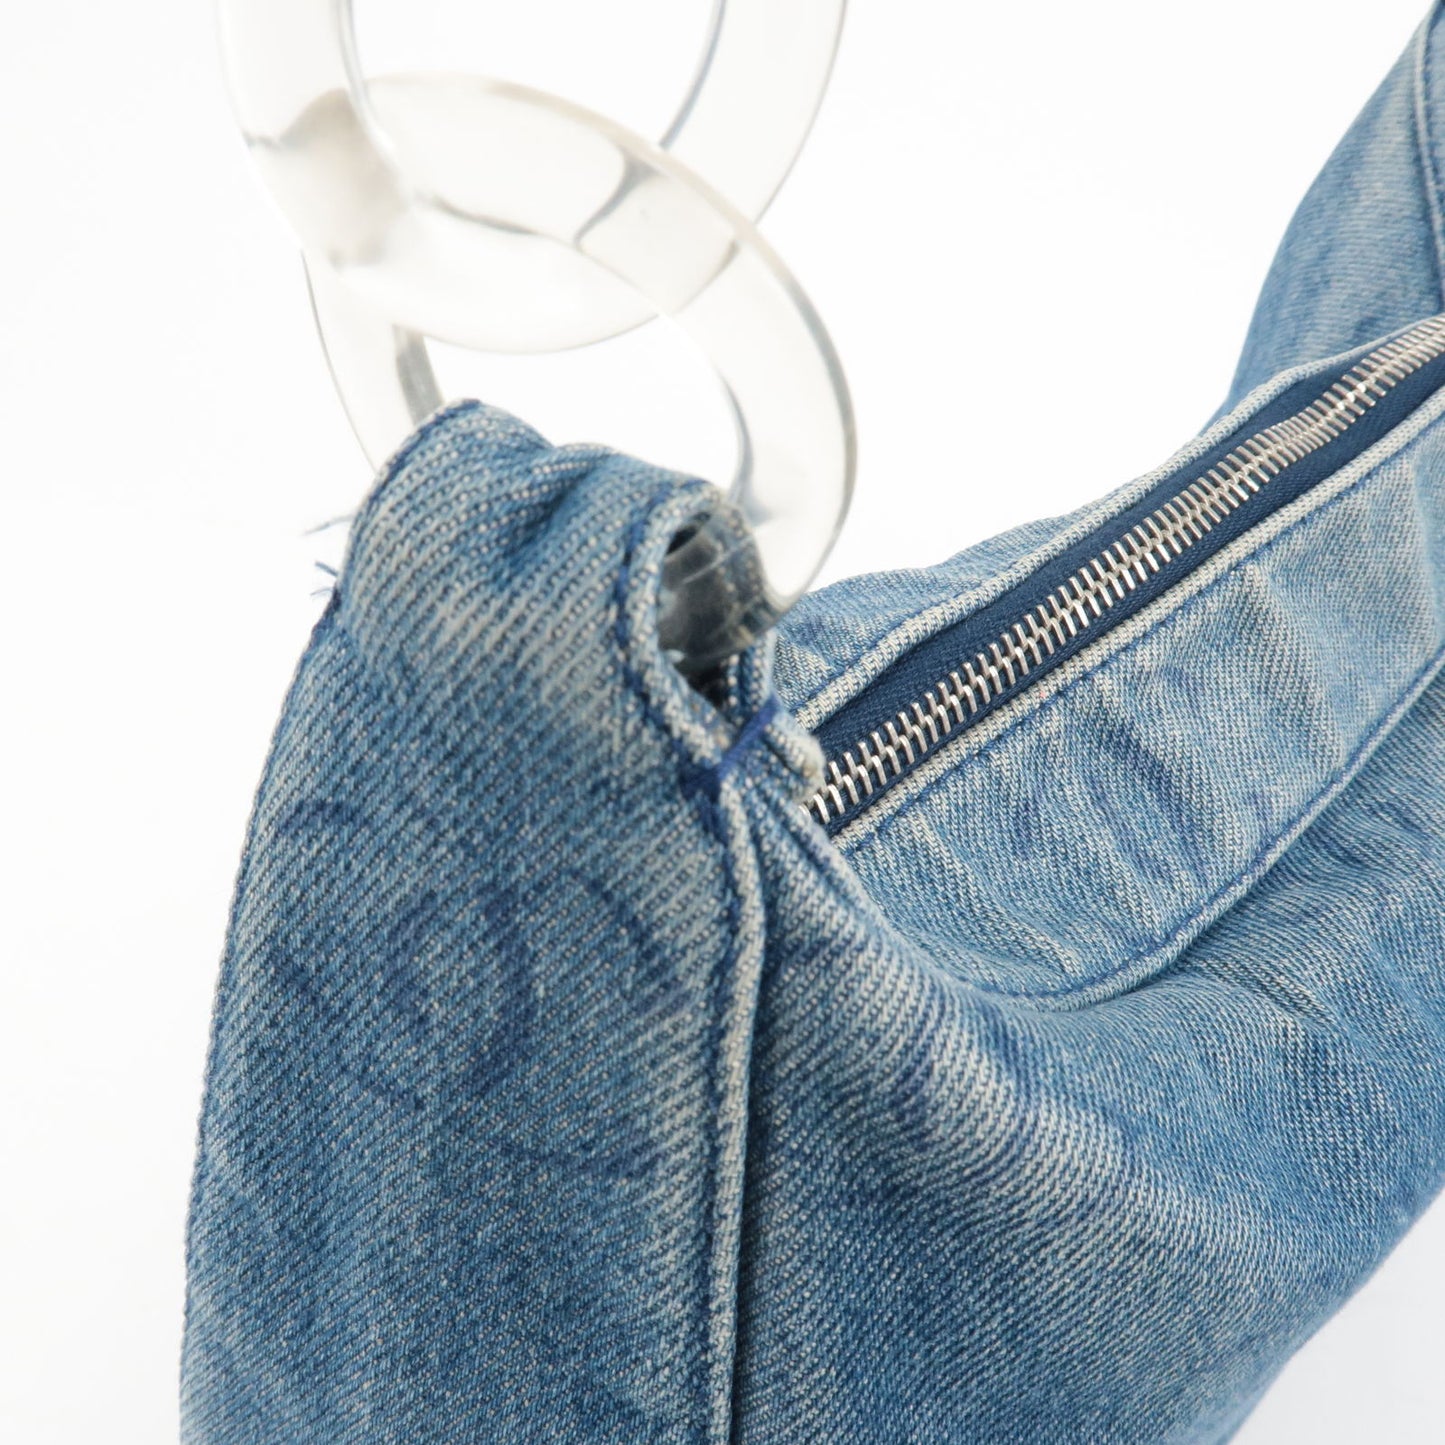 Chanel Denim Plastic Shoulder Bag Blue